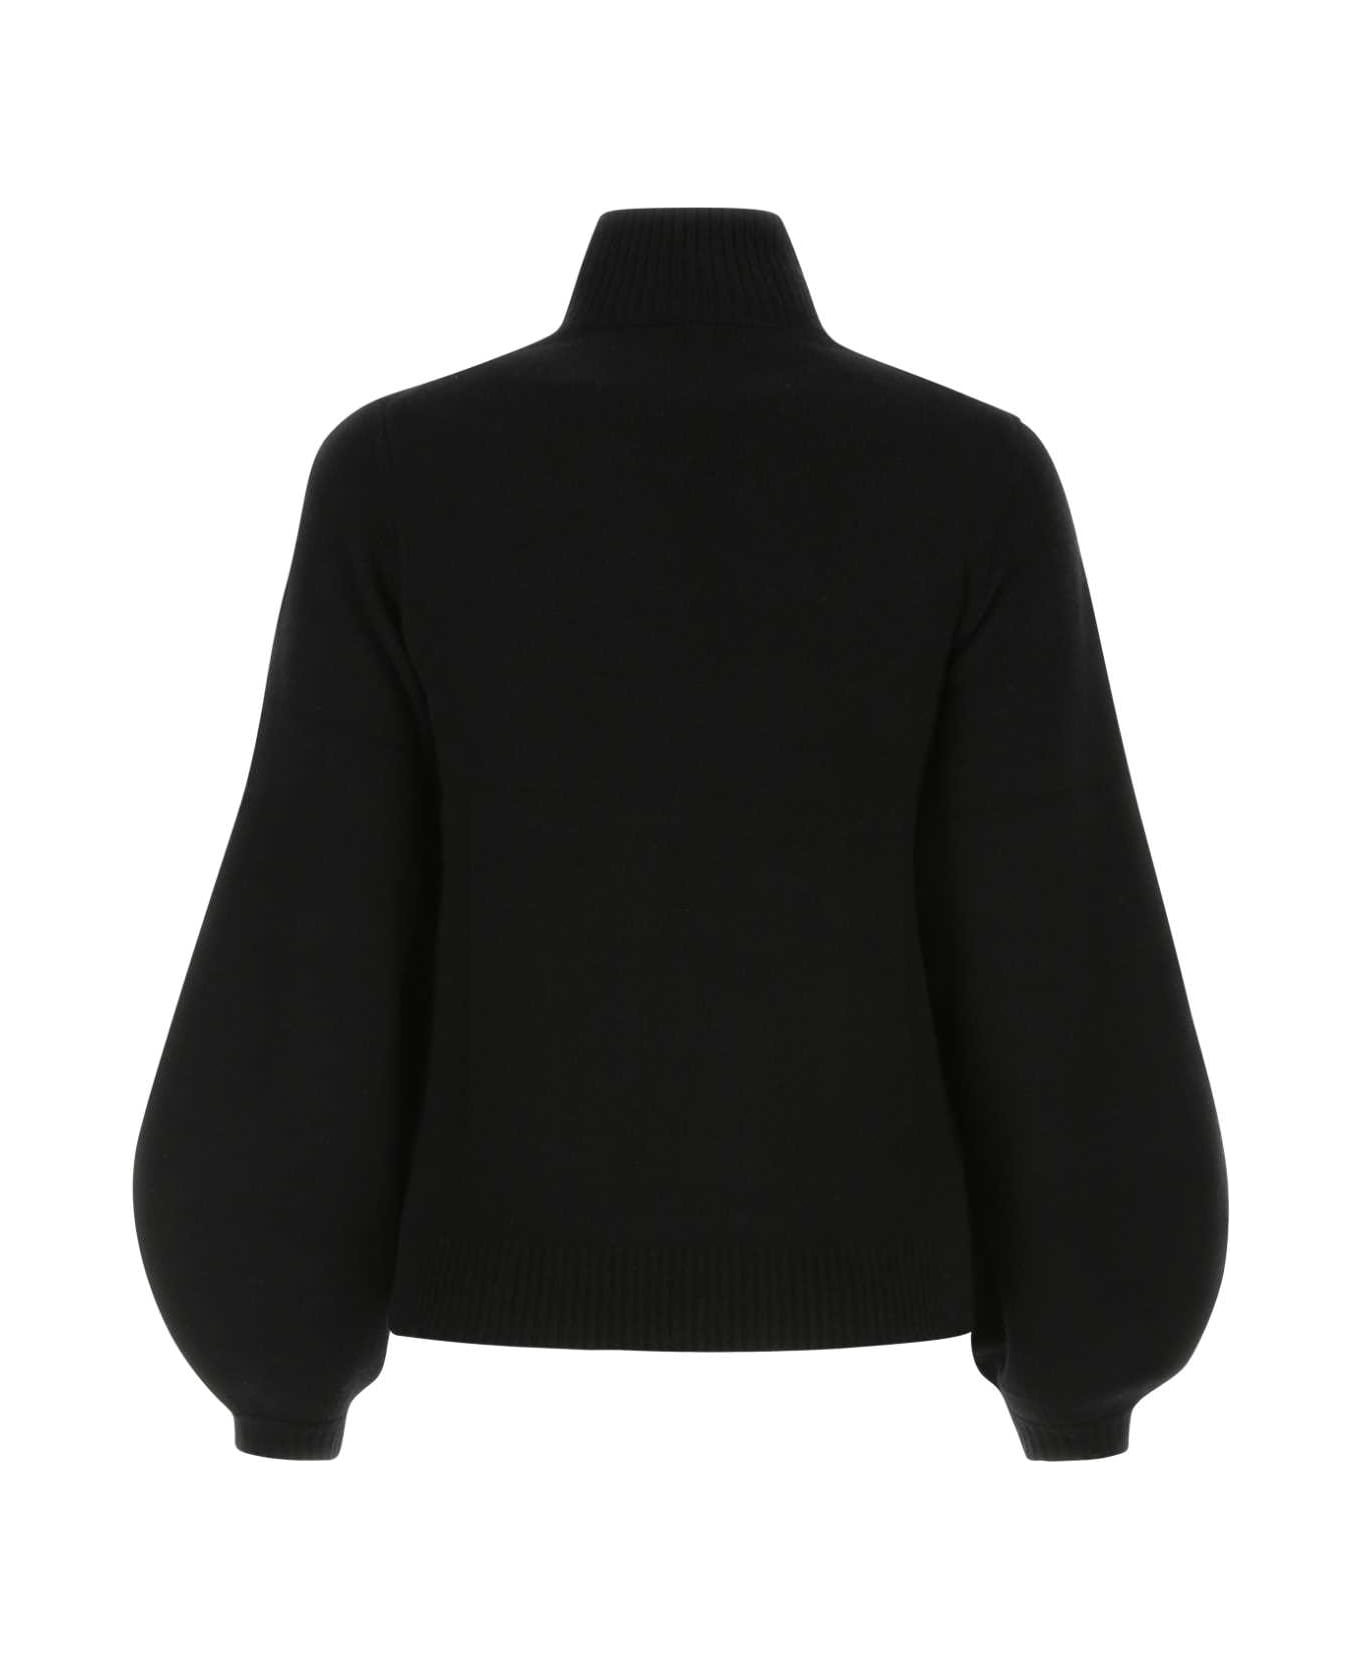 Chloé Black Cashmere Sweater - 001 ニットウェア